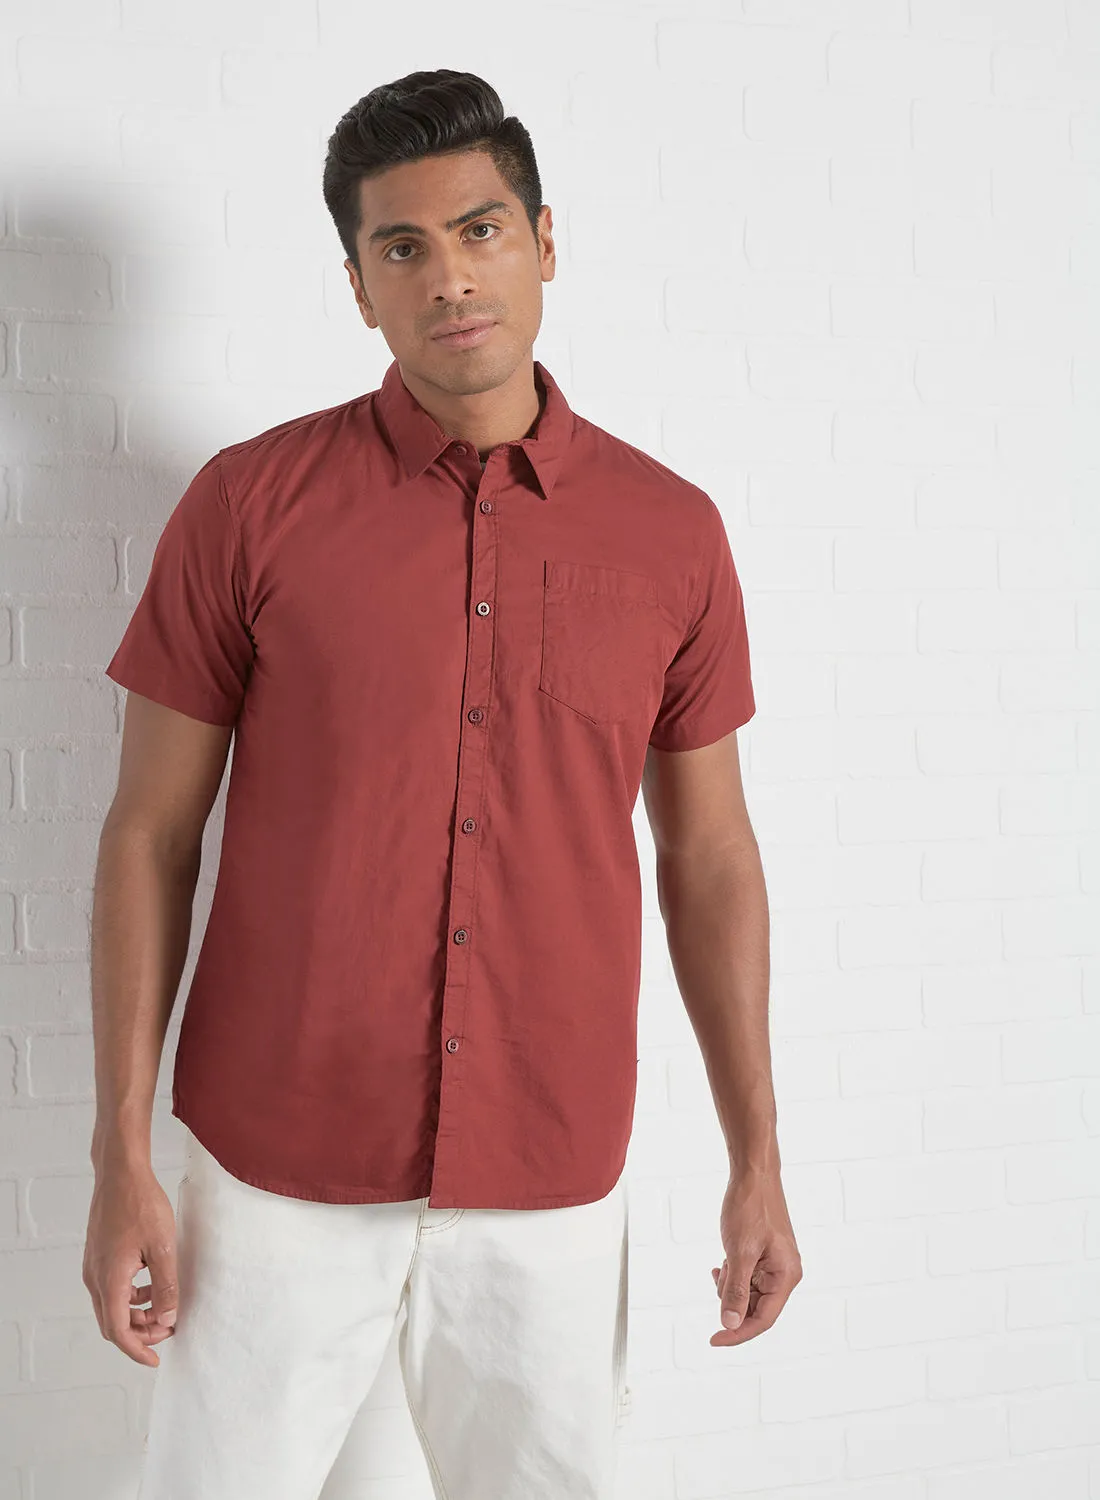 ABOF Men's Basic Short Sleeve Shirt Red